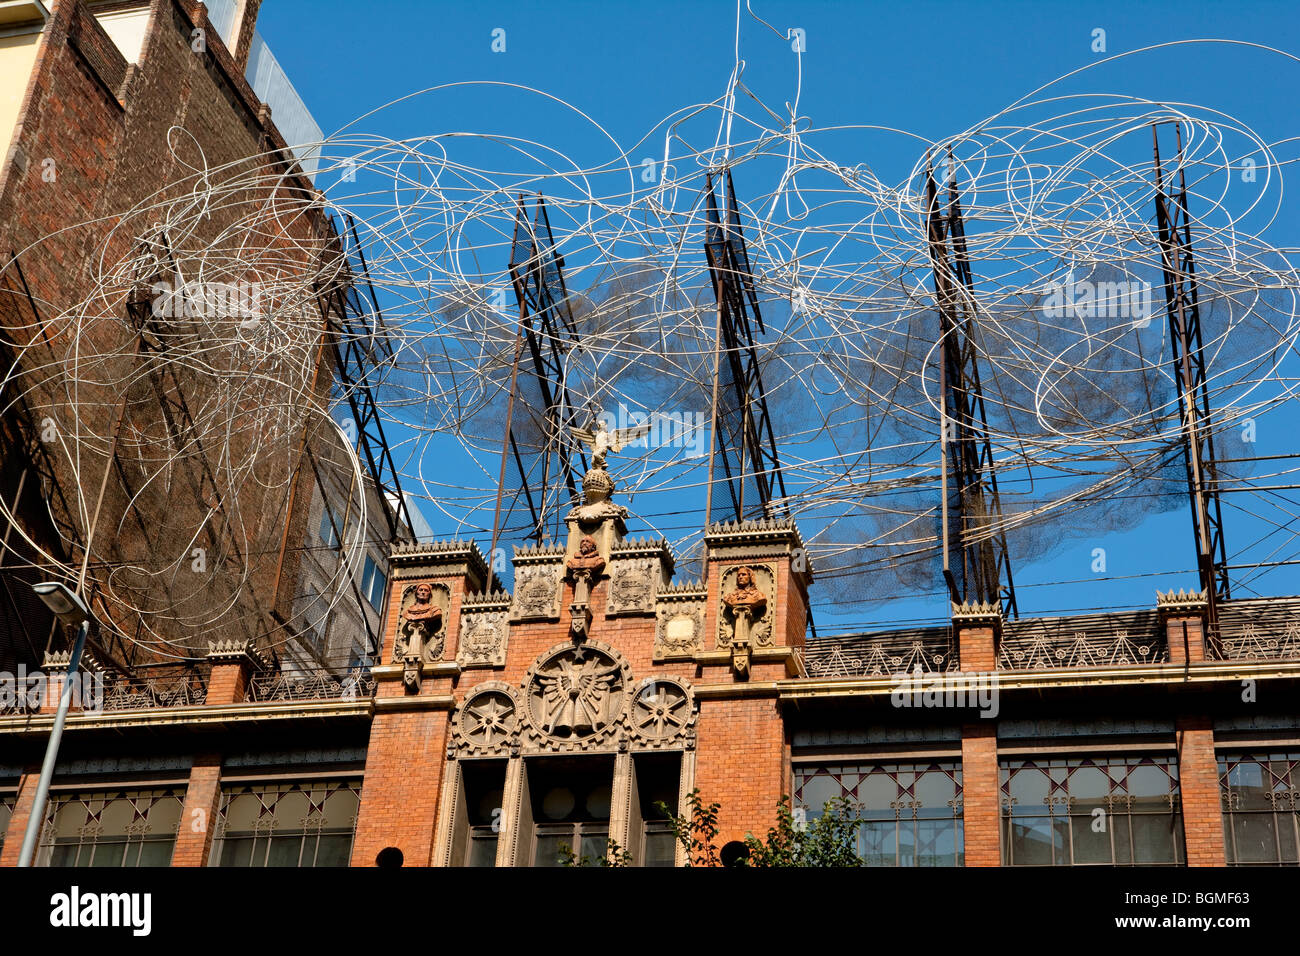 Barcelona - Spanisch-Art-Nouveau-Bewegung - Modernisme-Stil - The Tapies Stiftung - Stadtteil Eixample Stockfoto